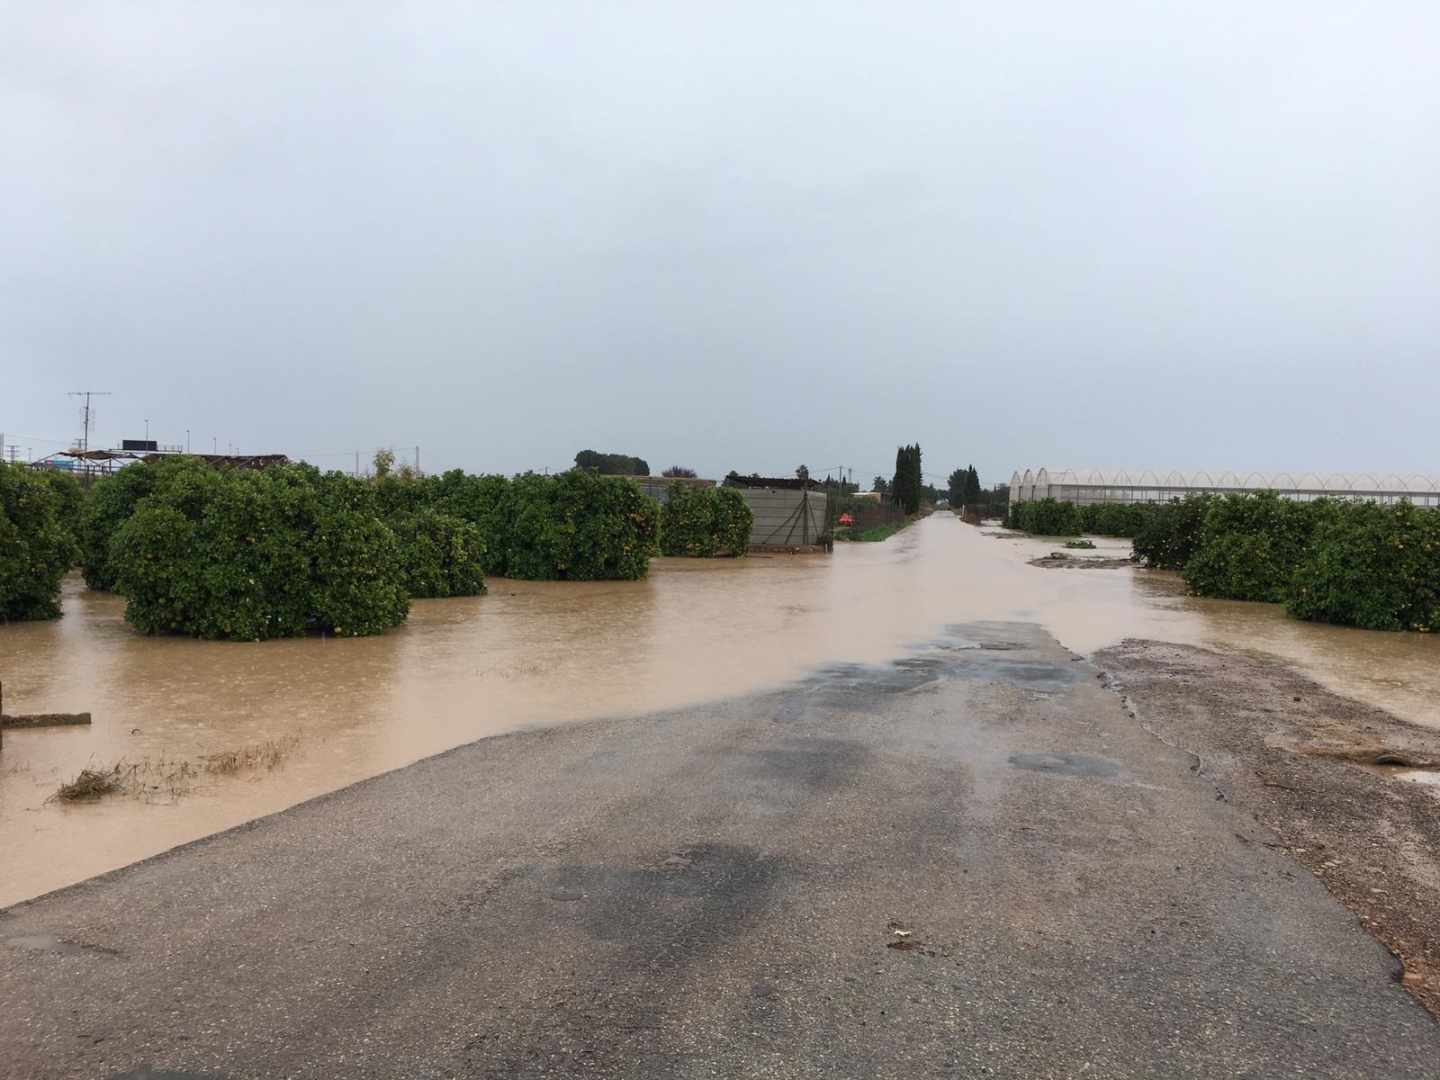 Campo inundado en San Javier (Murcia).